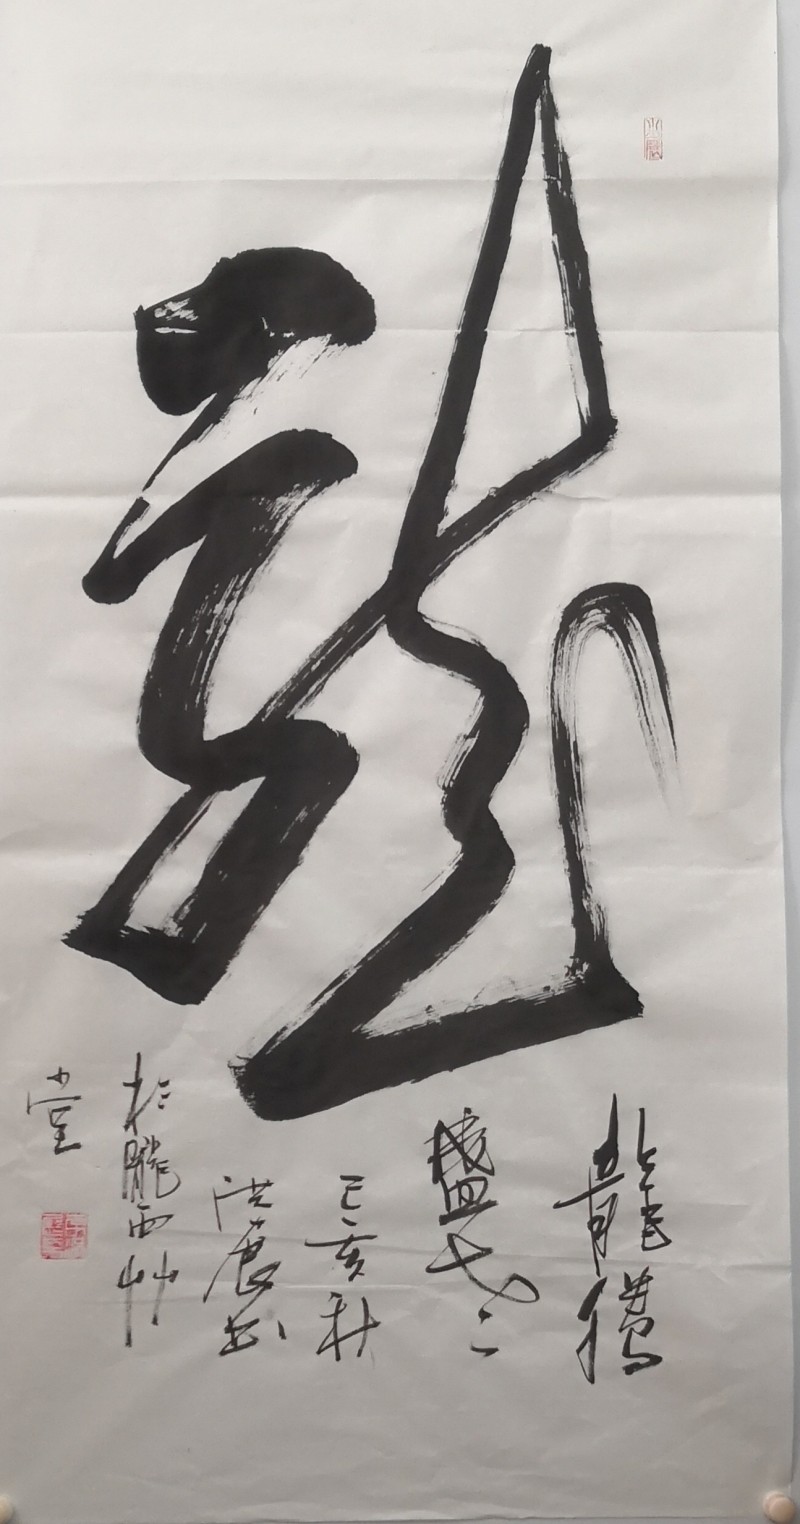 李洪展——中宣盛世国际书画院会员、著名书画家